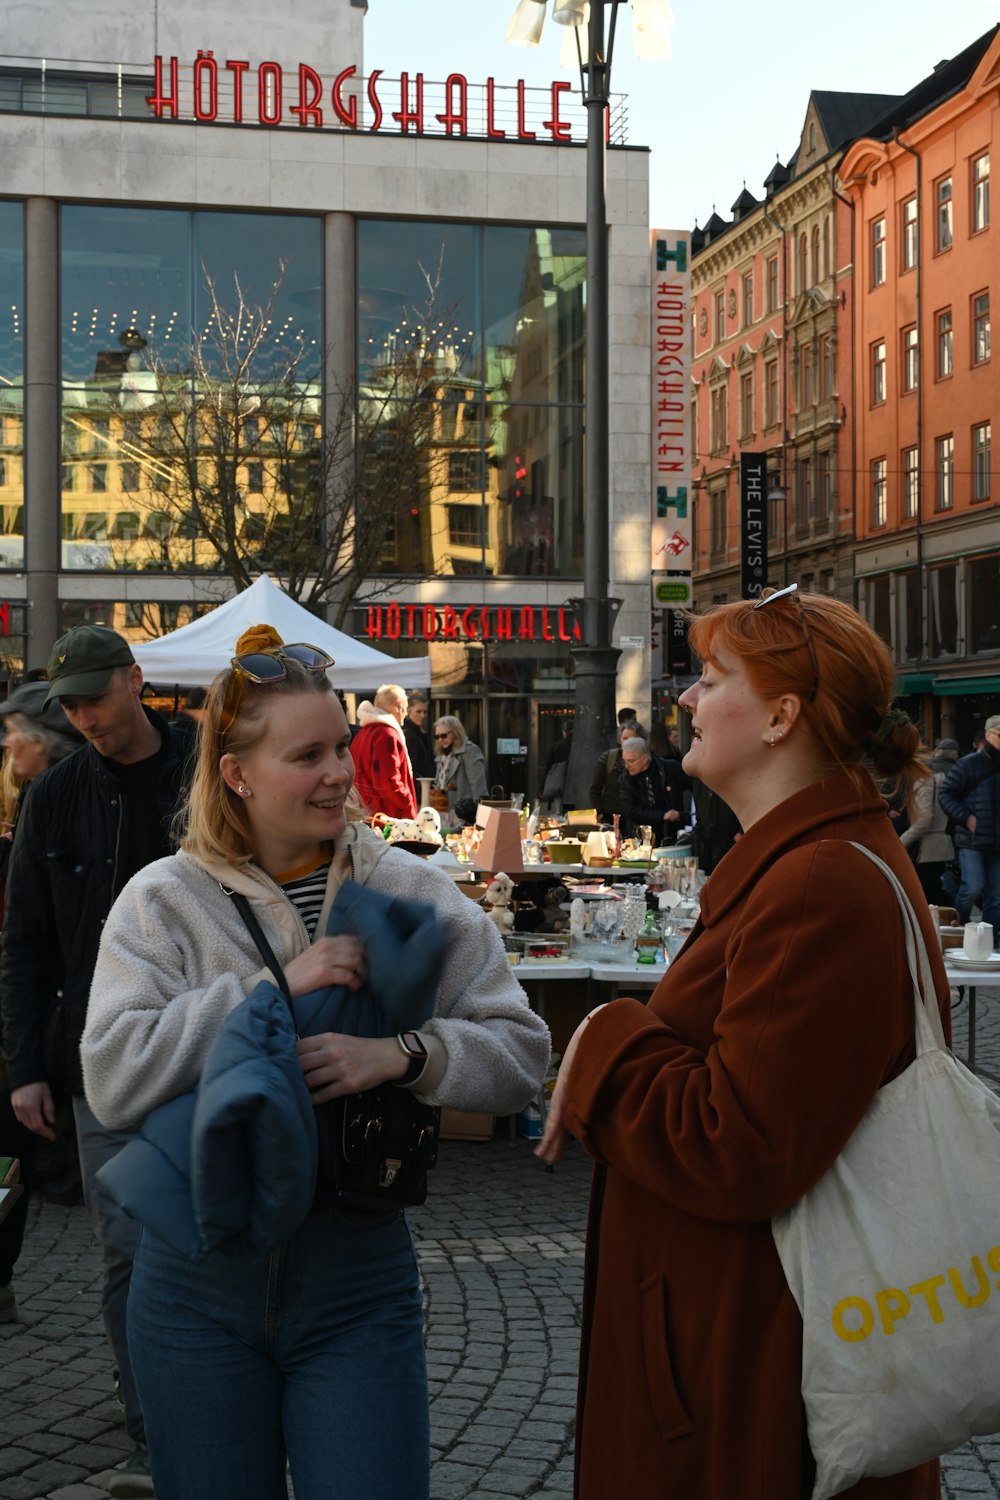 Deux femmes discutent devant un magasin